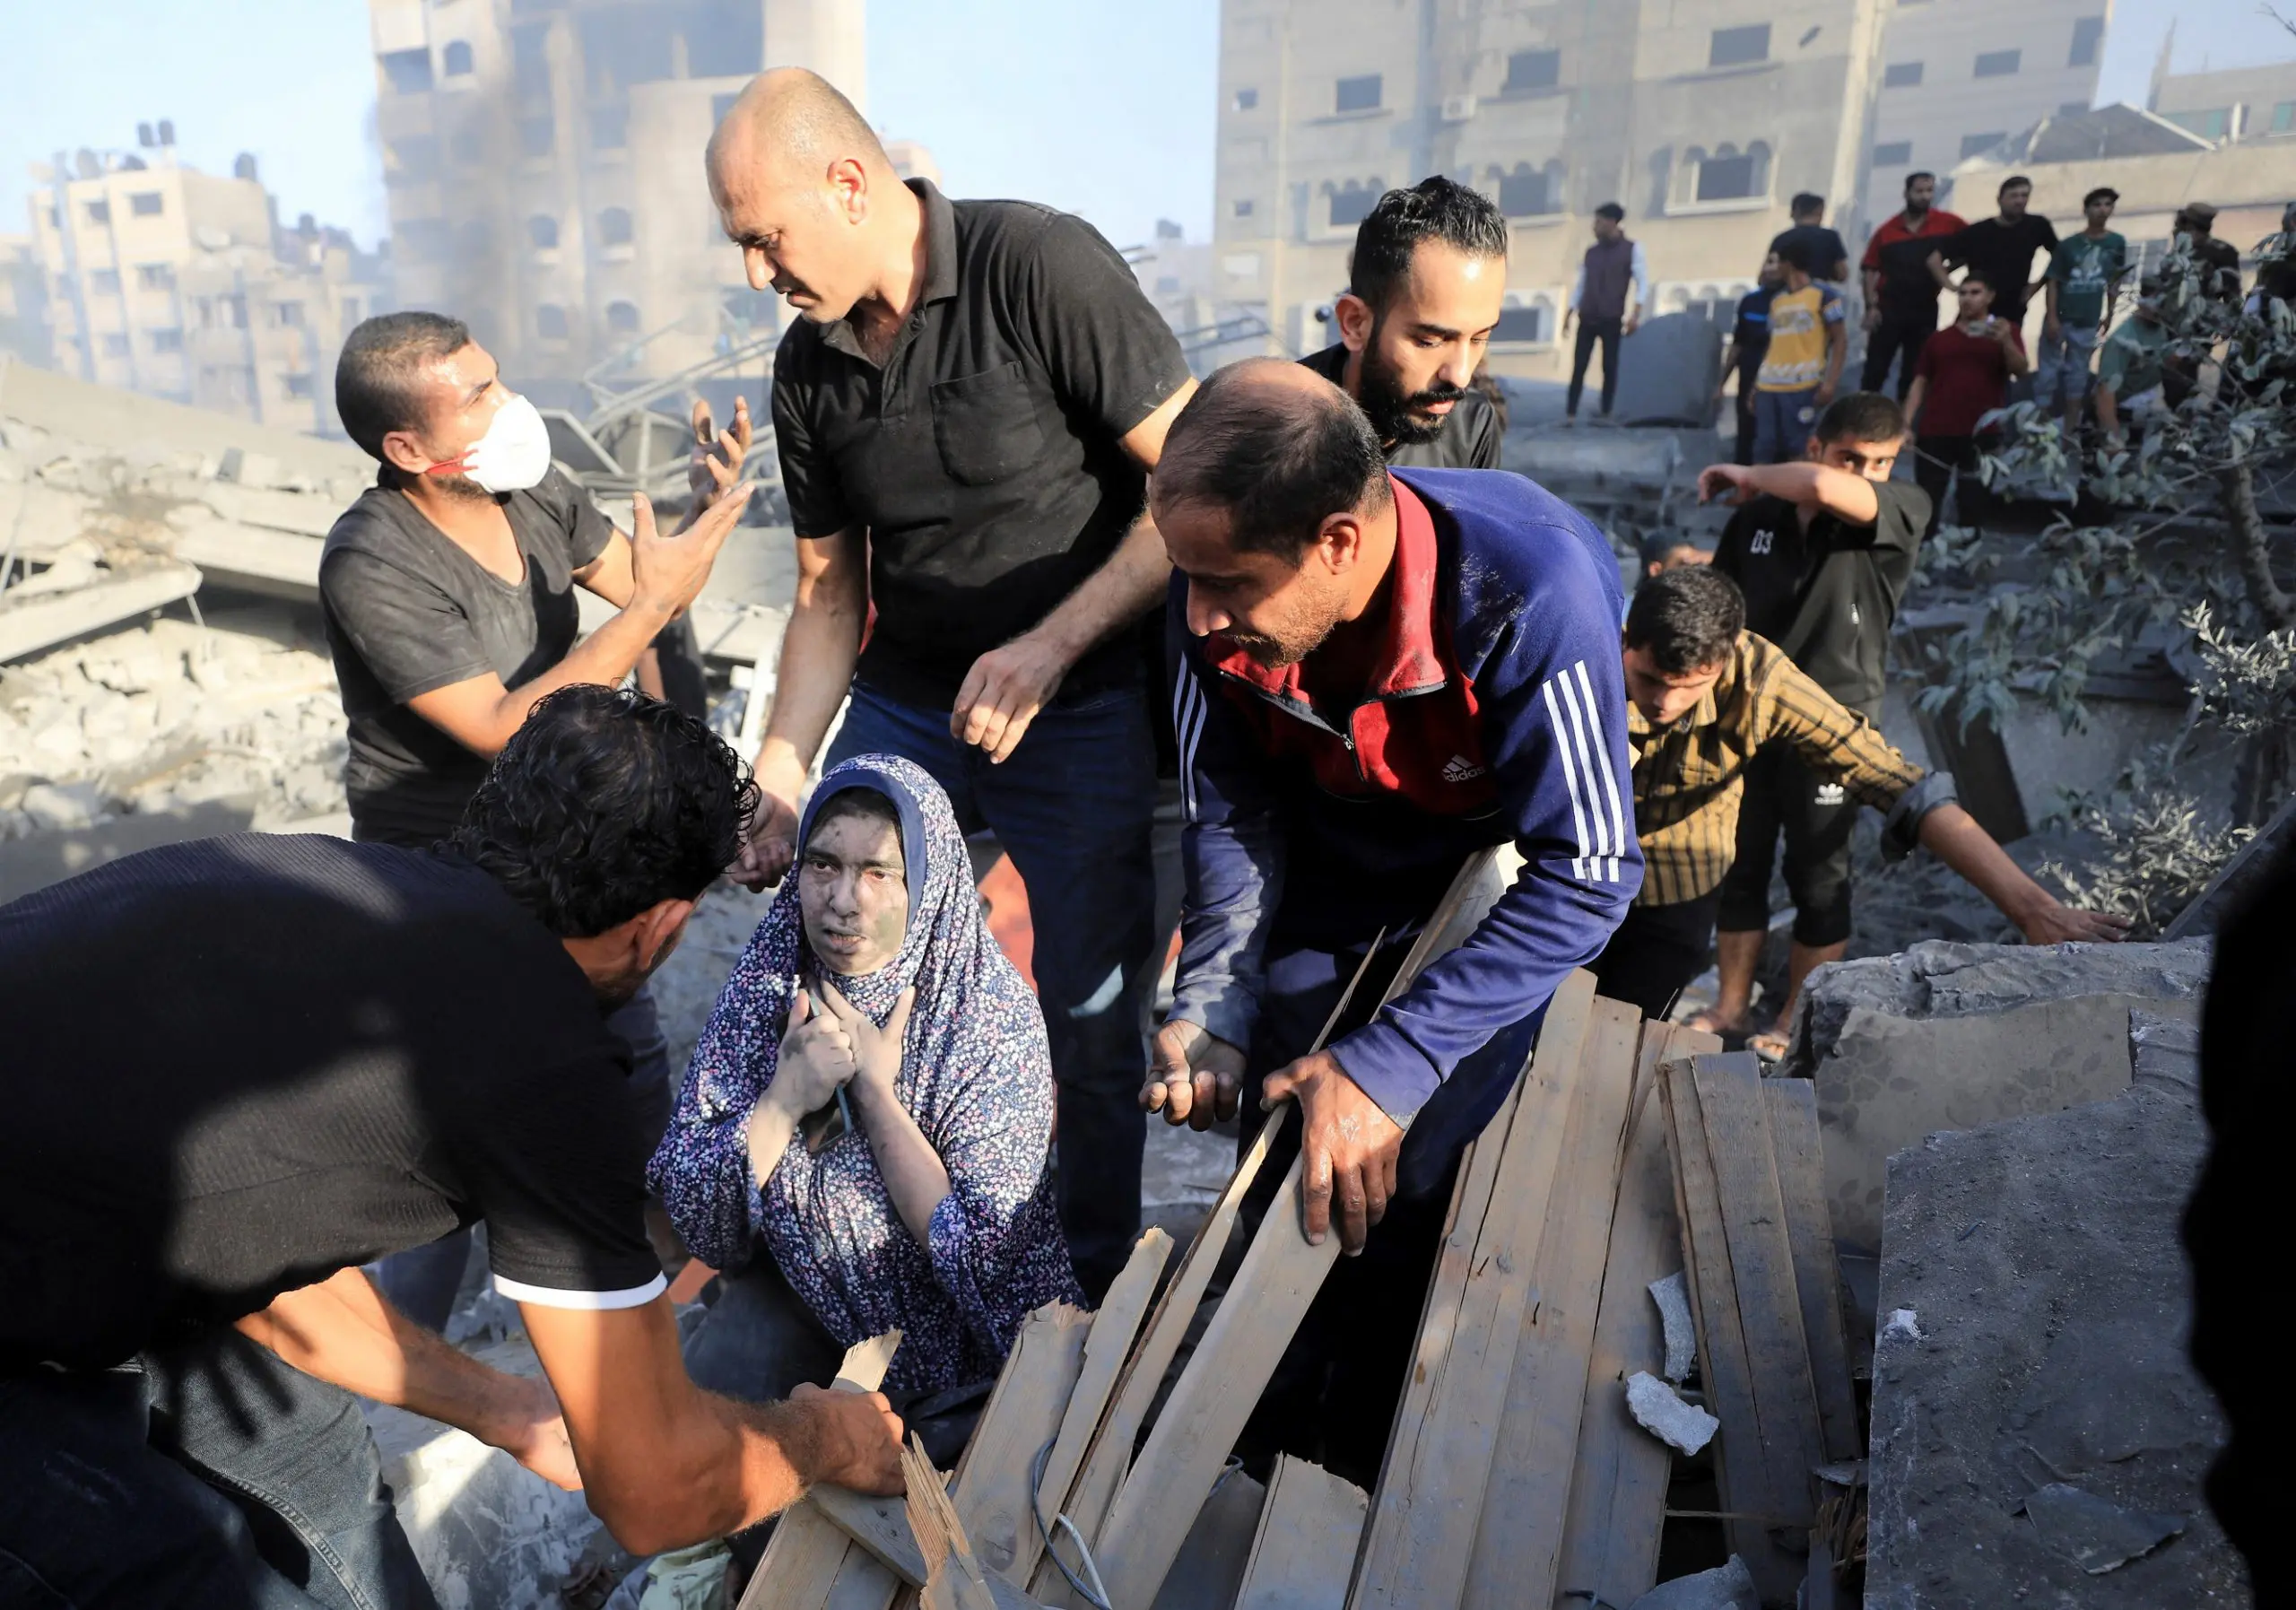 كشف تقرير ممي جديد، اليوم الأربعاء، عن أن إسرائيل وحماس ارتكبتا جرائم حرب خلال حرب غزة، وأن الأولى ارتكبت أيضًا جرائم ضد الإنسانية بسبب الخسائر الكبيرة بين المدنيين.